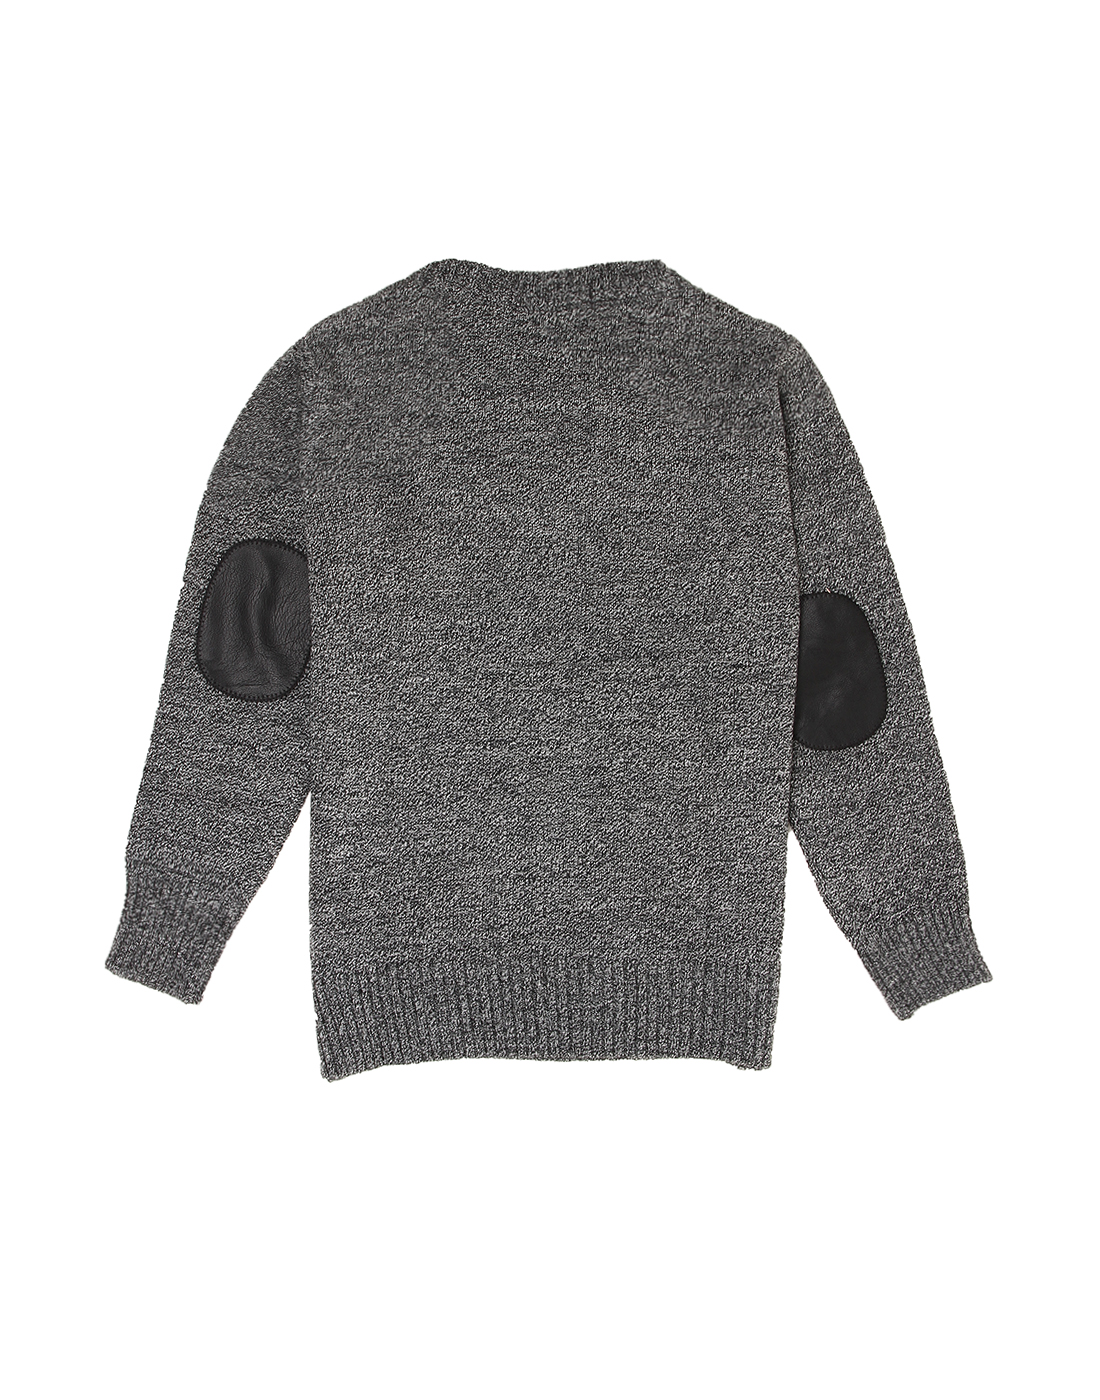 Wingsfield Boys Dark Grey Sweater